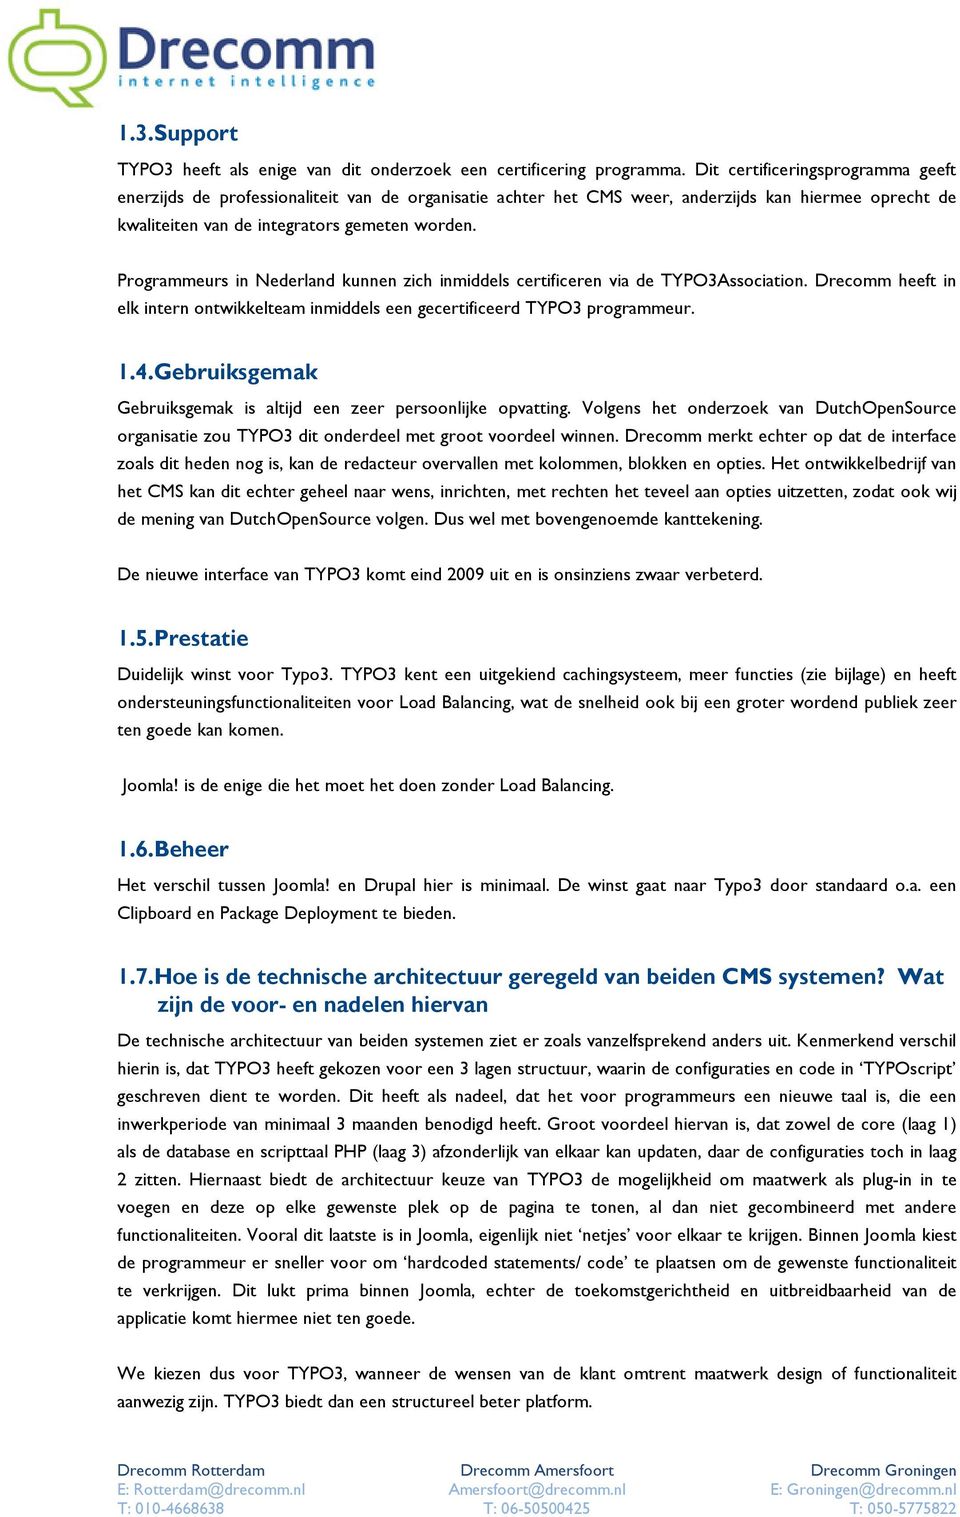 inmiddels een gecertificeerd TYPO3 programmeur 14Gebruiksgemak Gebruiksgemak is altijd een zeer persoonlijke opvatting Volgens het onderzoek van DutchOpenSource organisatie zou TYPO3 dit onderdeel